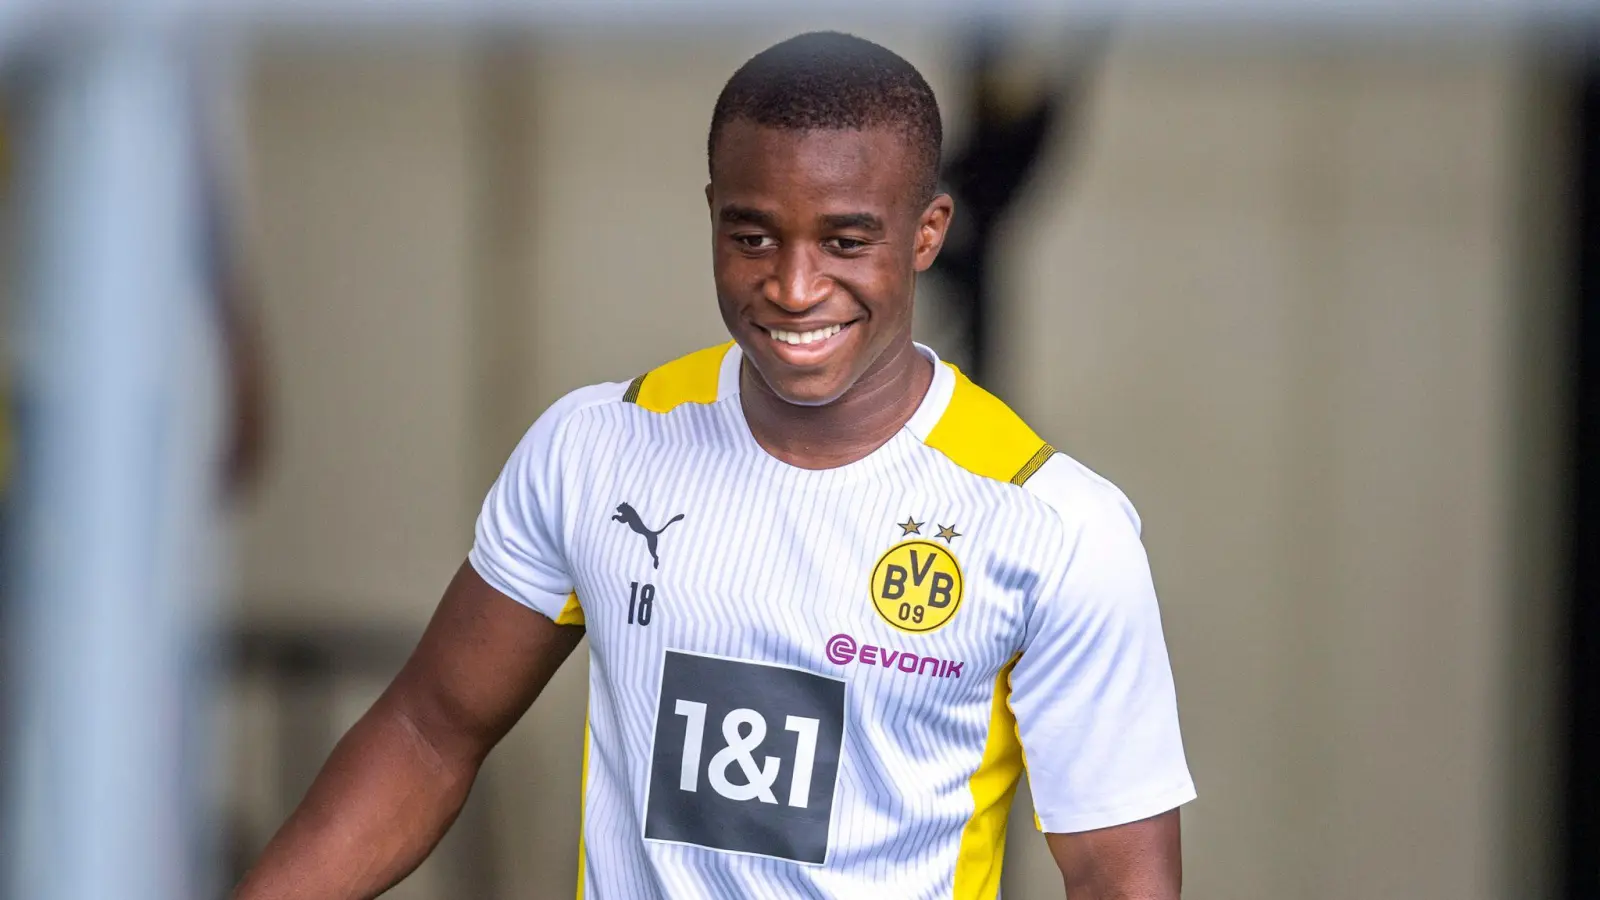 Durfte sich über ein VfB-Trikot freuen: Dortmunds Youngster Youssoufa Moukoko. (Foto: David Inderlied/dpa)